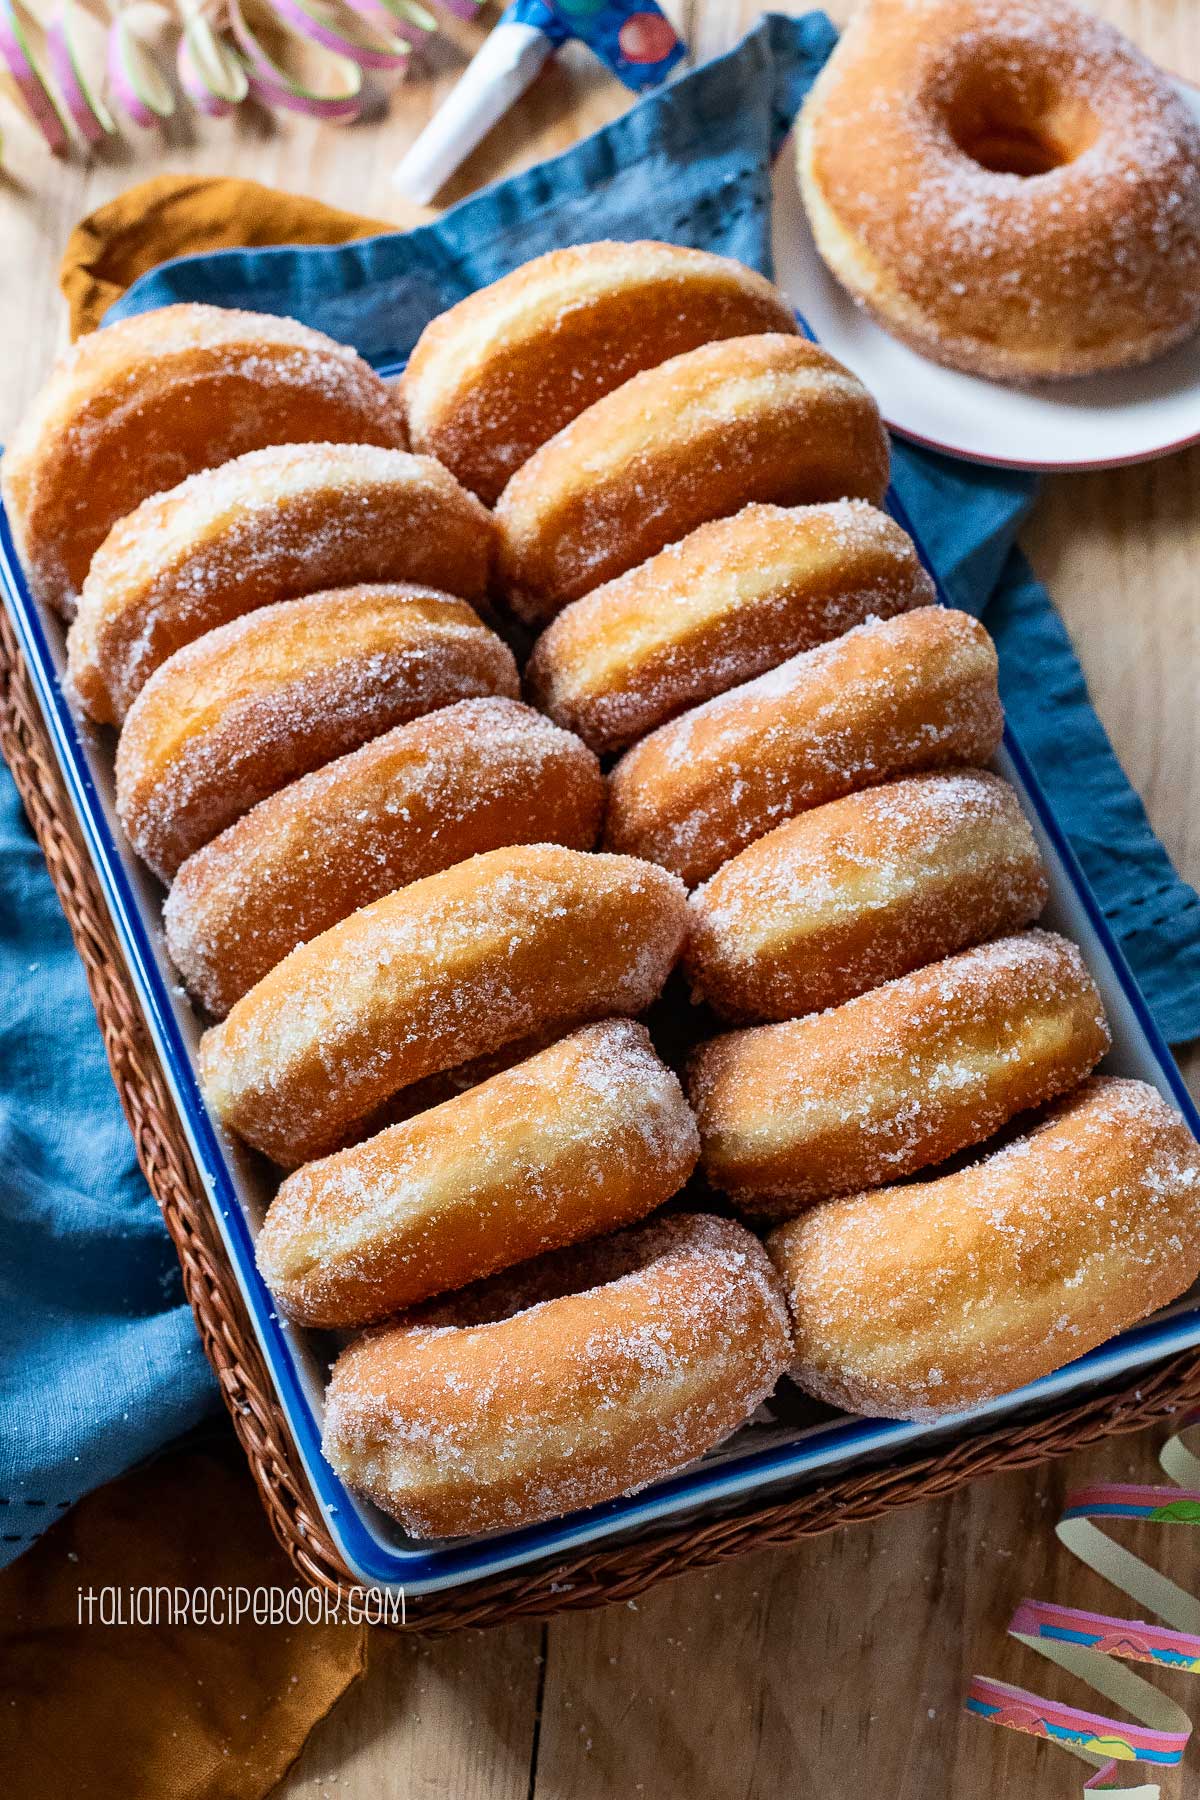 Graffe - Italian potato doughnuts on a tray.